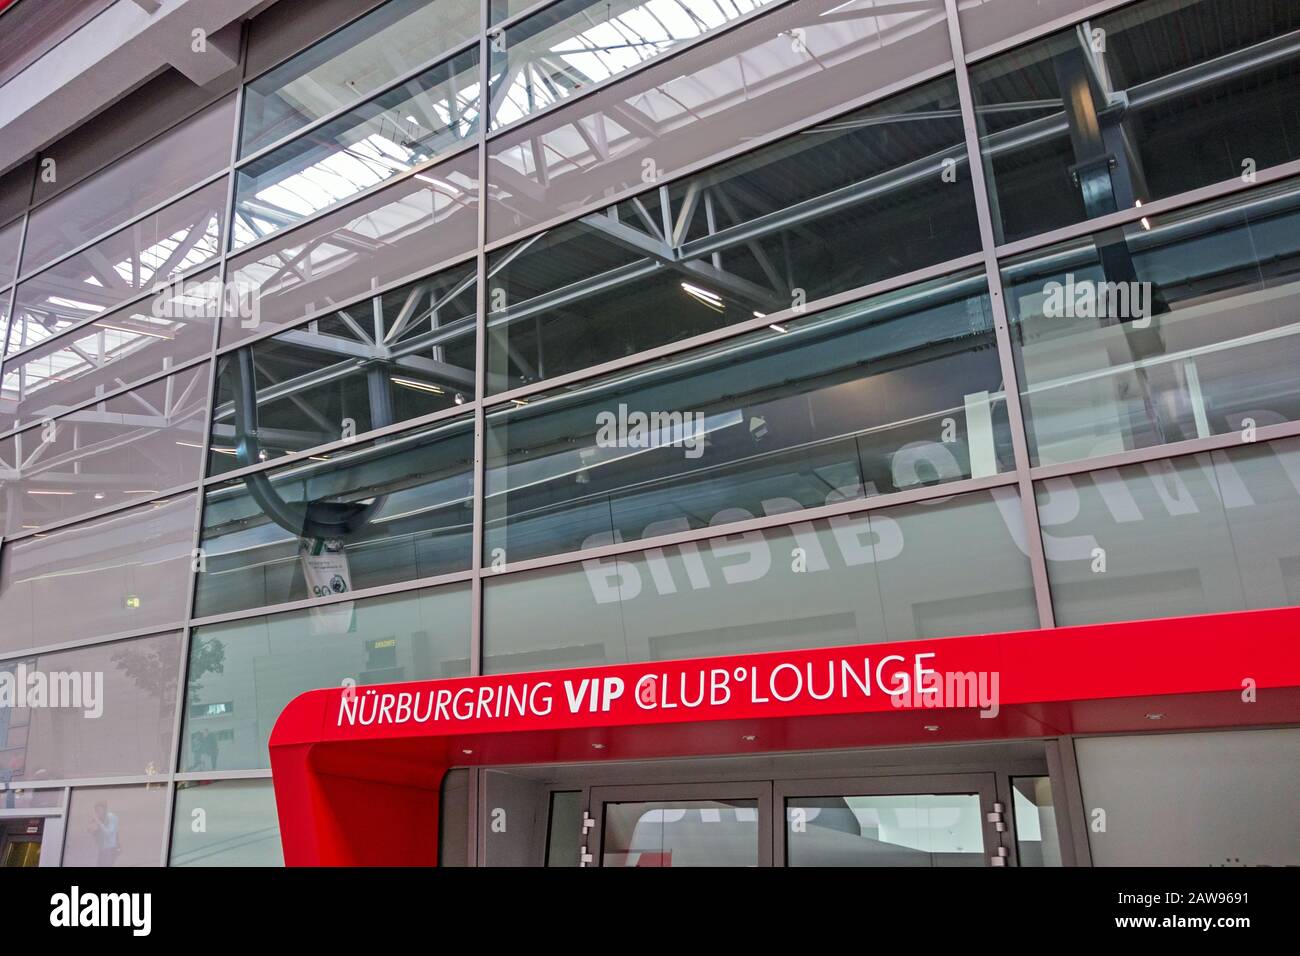 Nurburg, Deutschland - 20. Mai 2017: Race Track Nurburgring VIP Club Lounge Eingang - Glasfassade Stockfoto